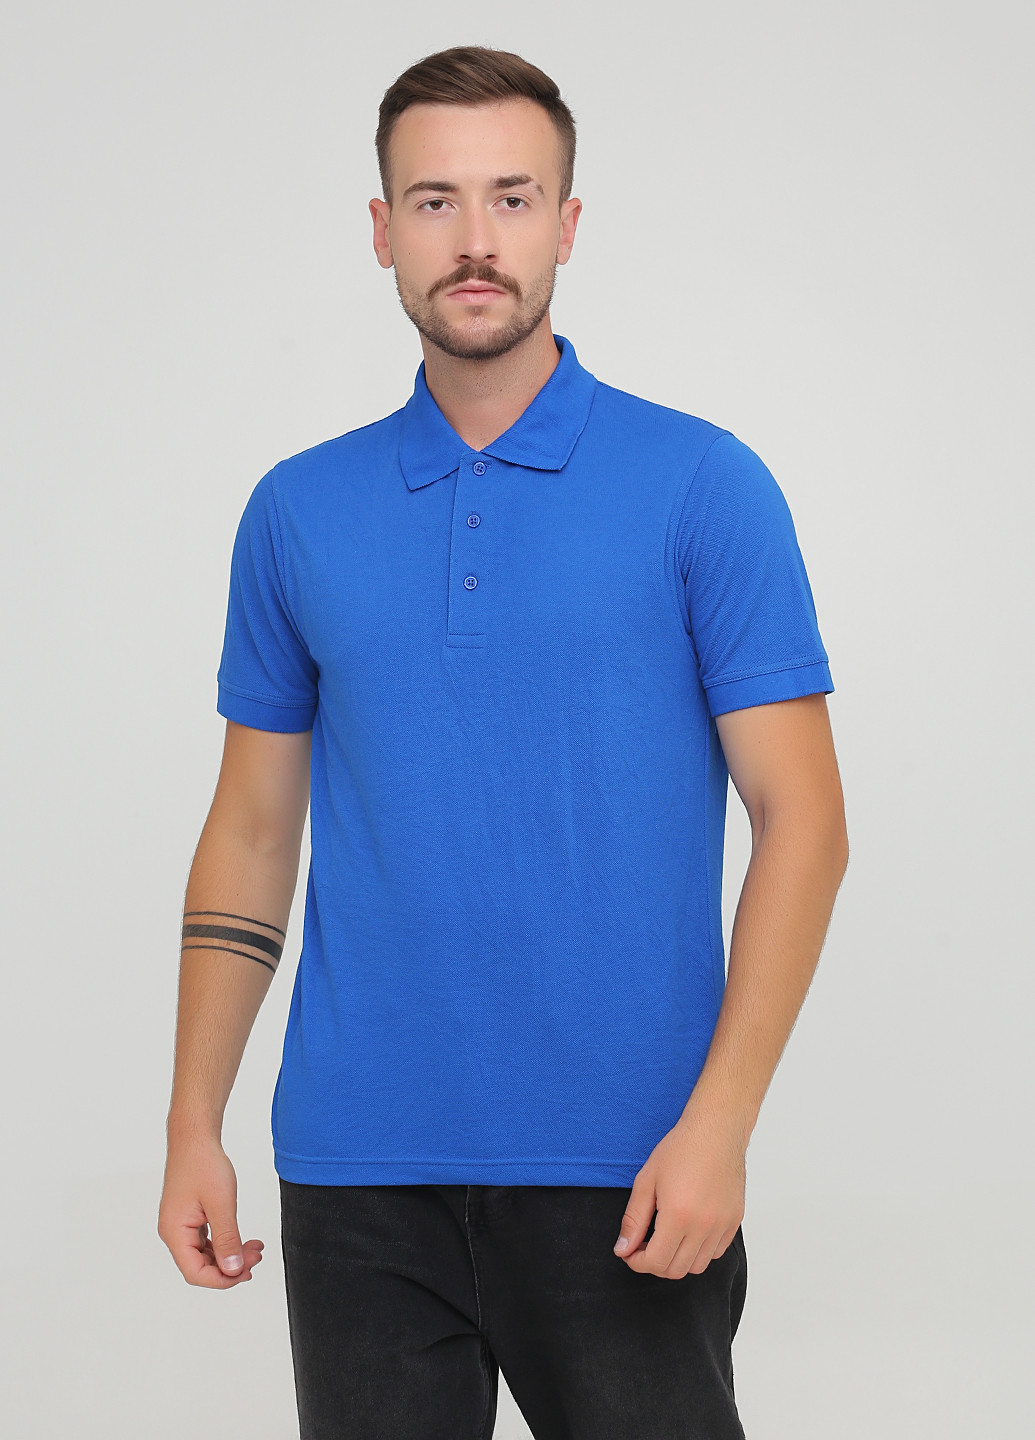 Синяя футболка-поло для мужчин Regatta однотонная